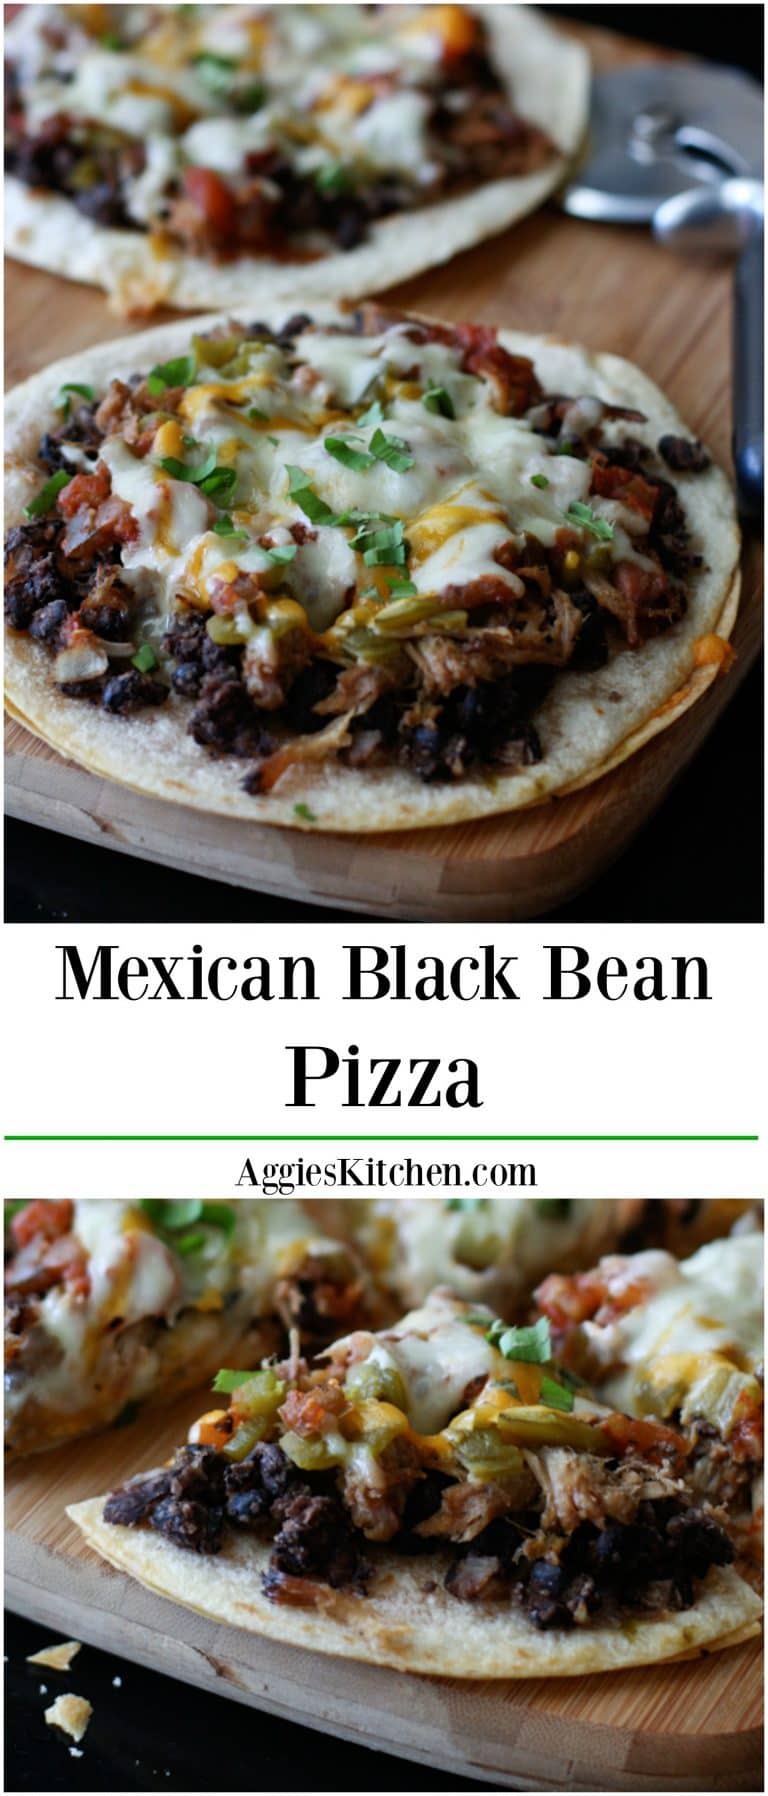 Mexican Black Bean Pizza